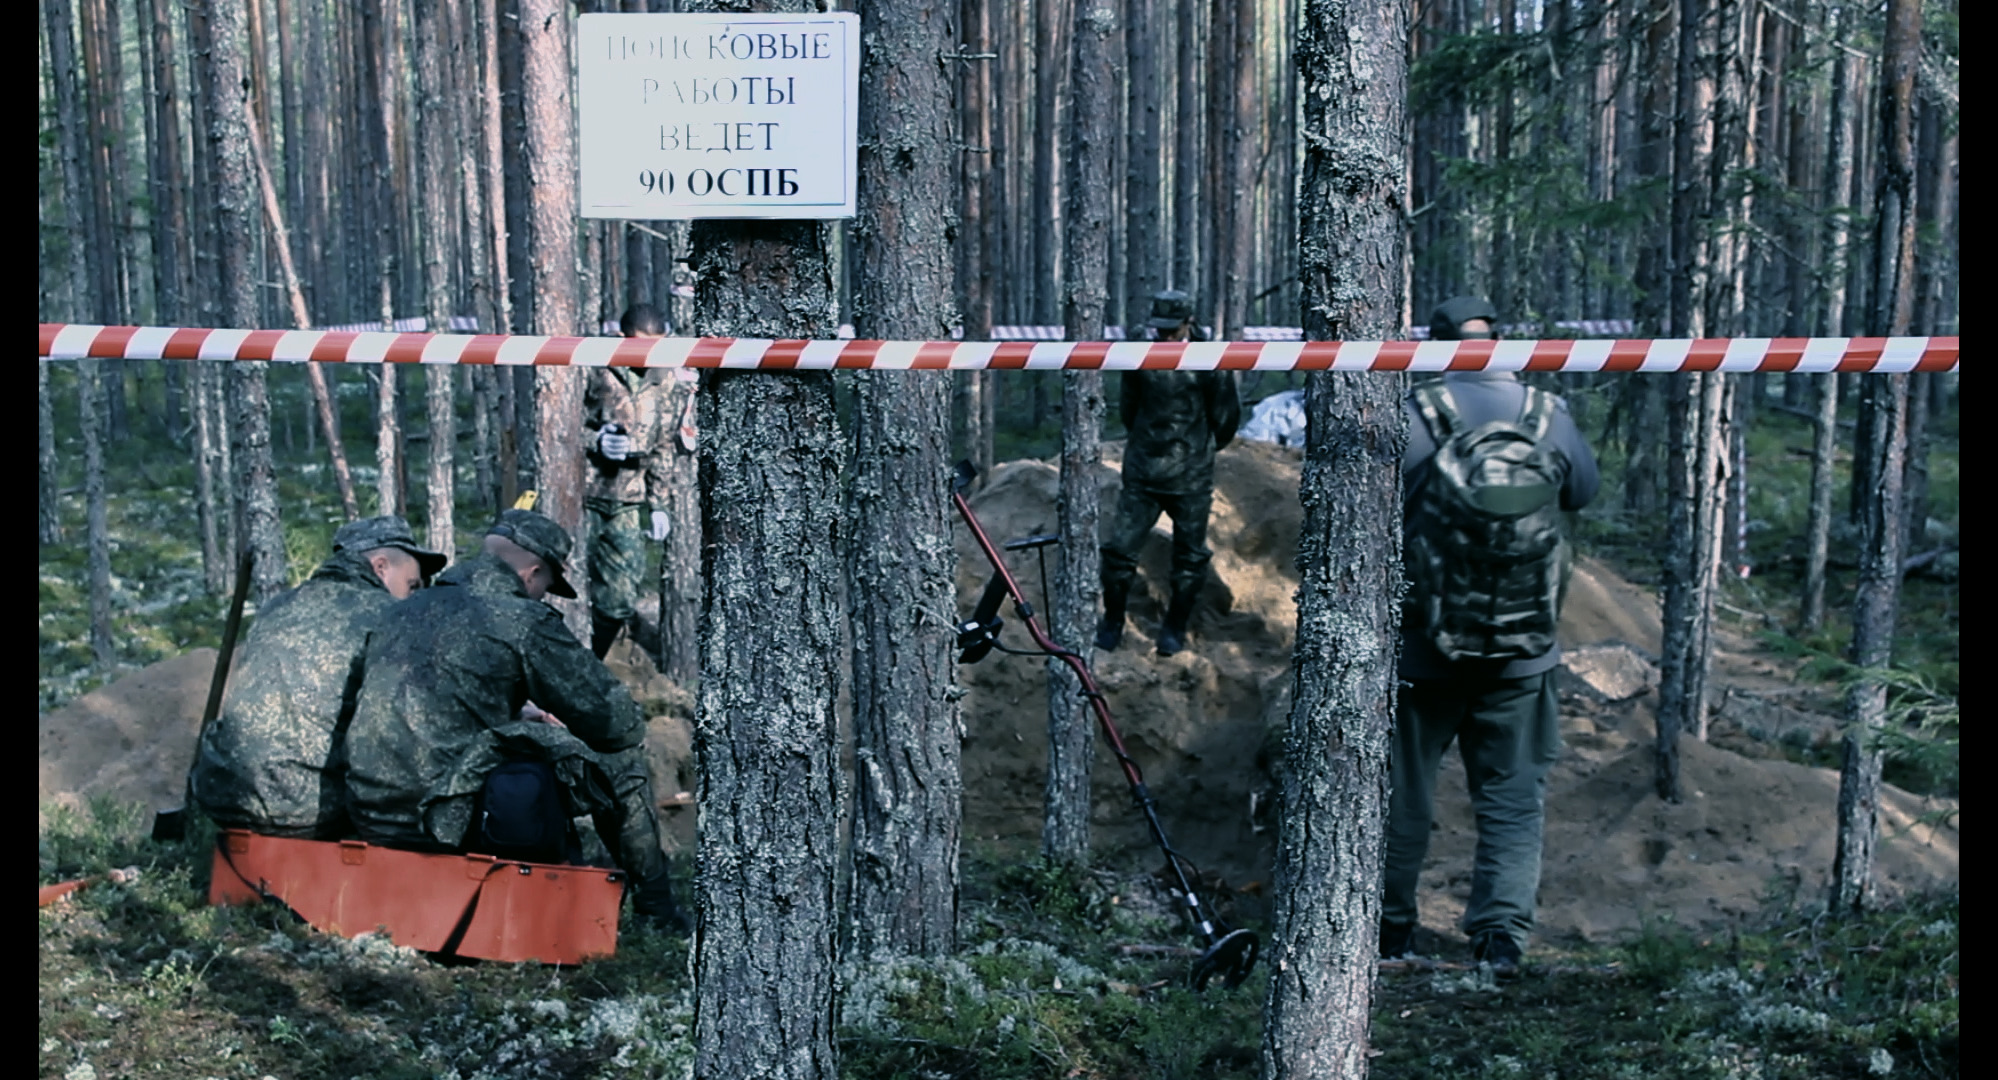 skupina ruských vojáků ohledává masový hrob v lese